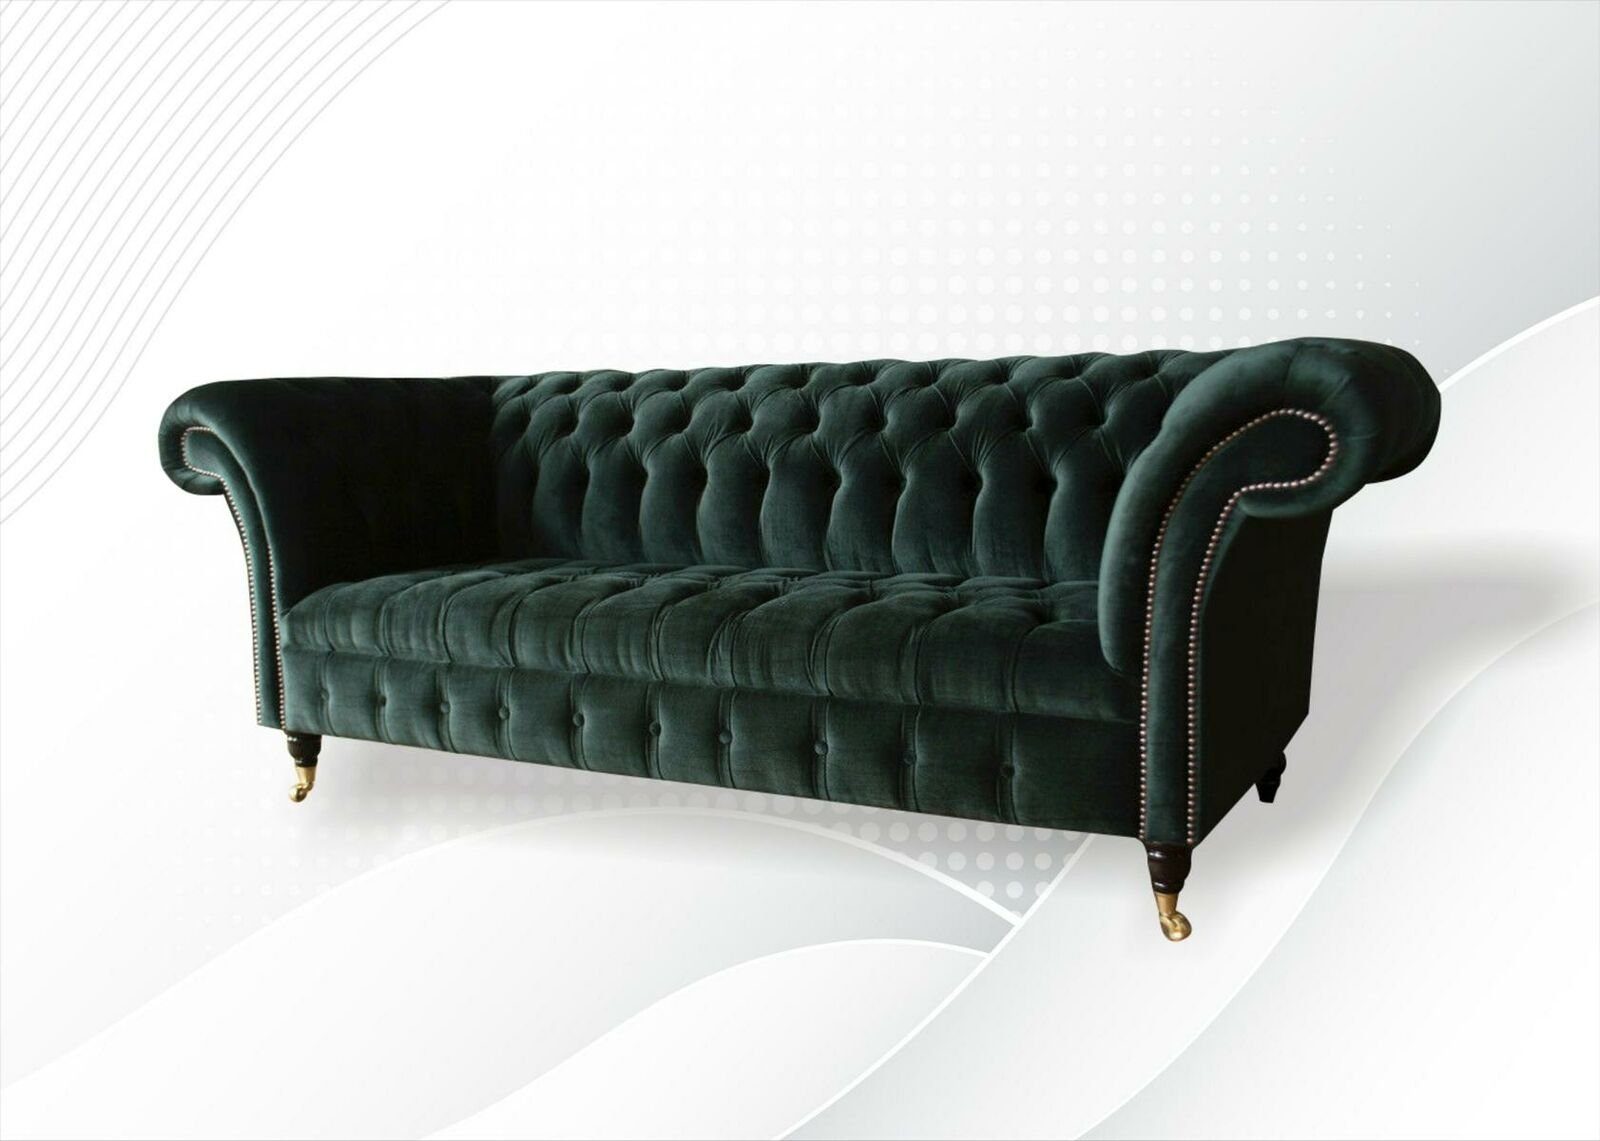 JVmoebel Chesterfield-Sofa Grünes Chesterfield Dreisitzer Wohnzimmermöbel Luxus Couch Neu, Made in Europe | Chesterfield-Sofas